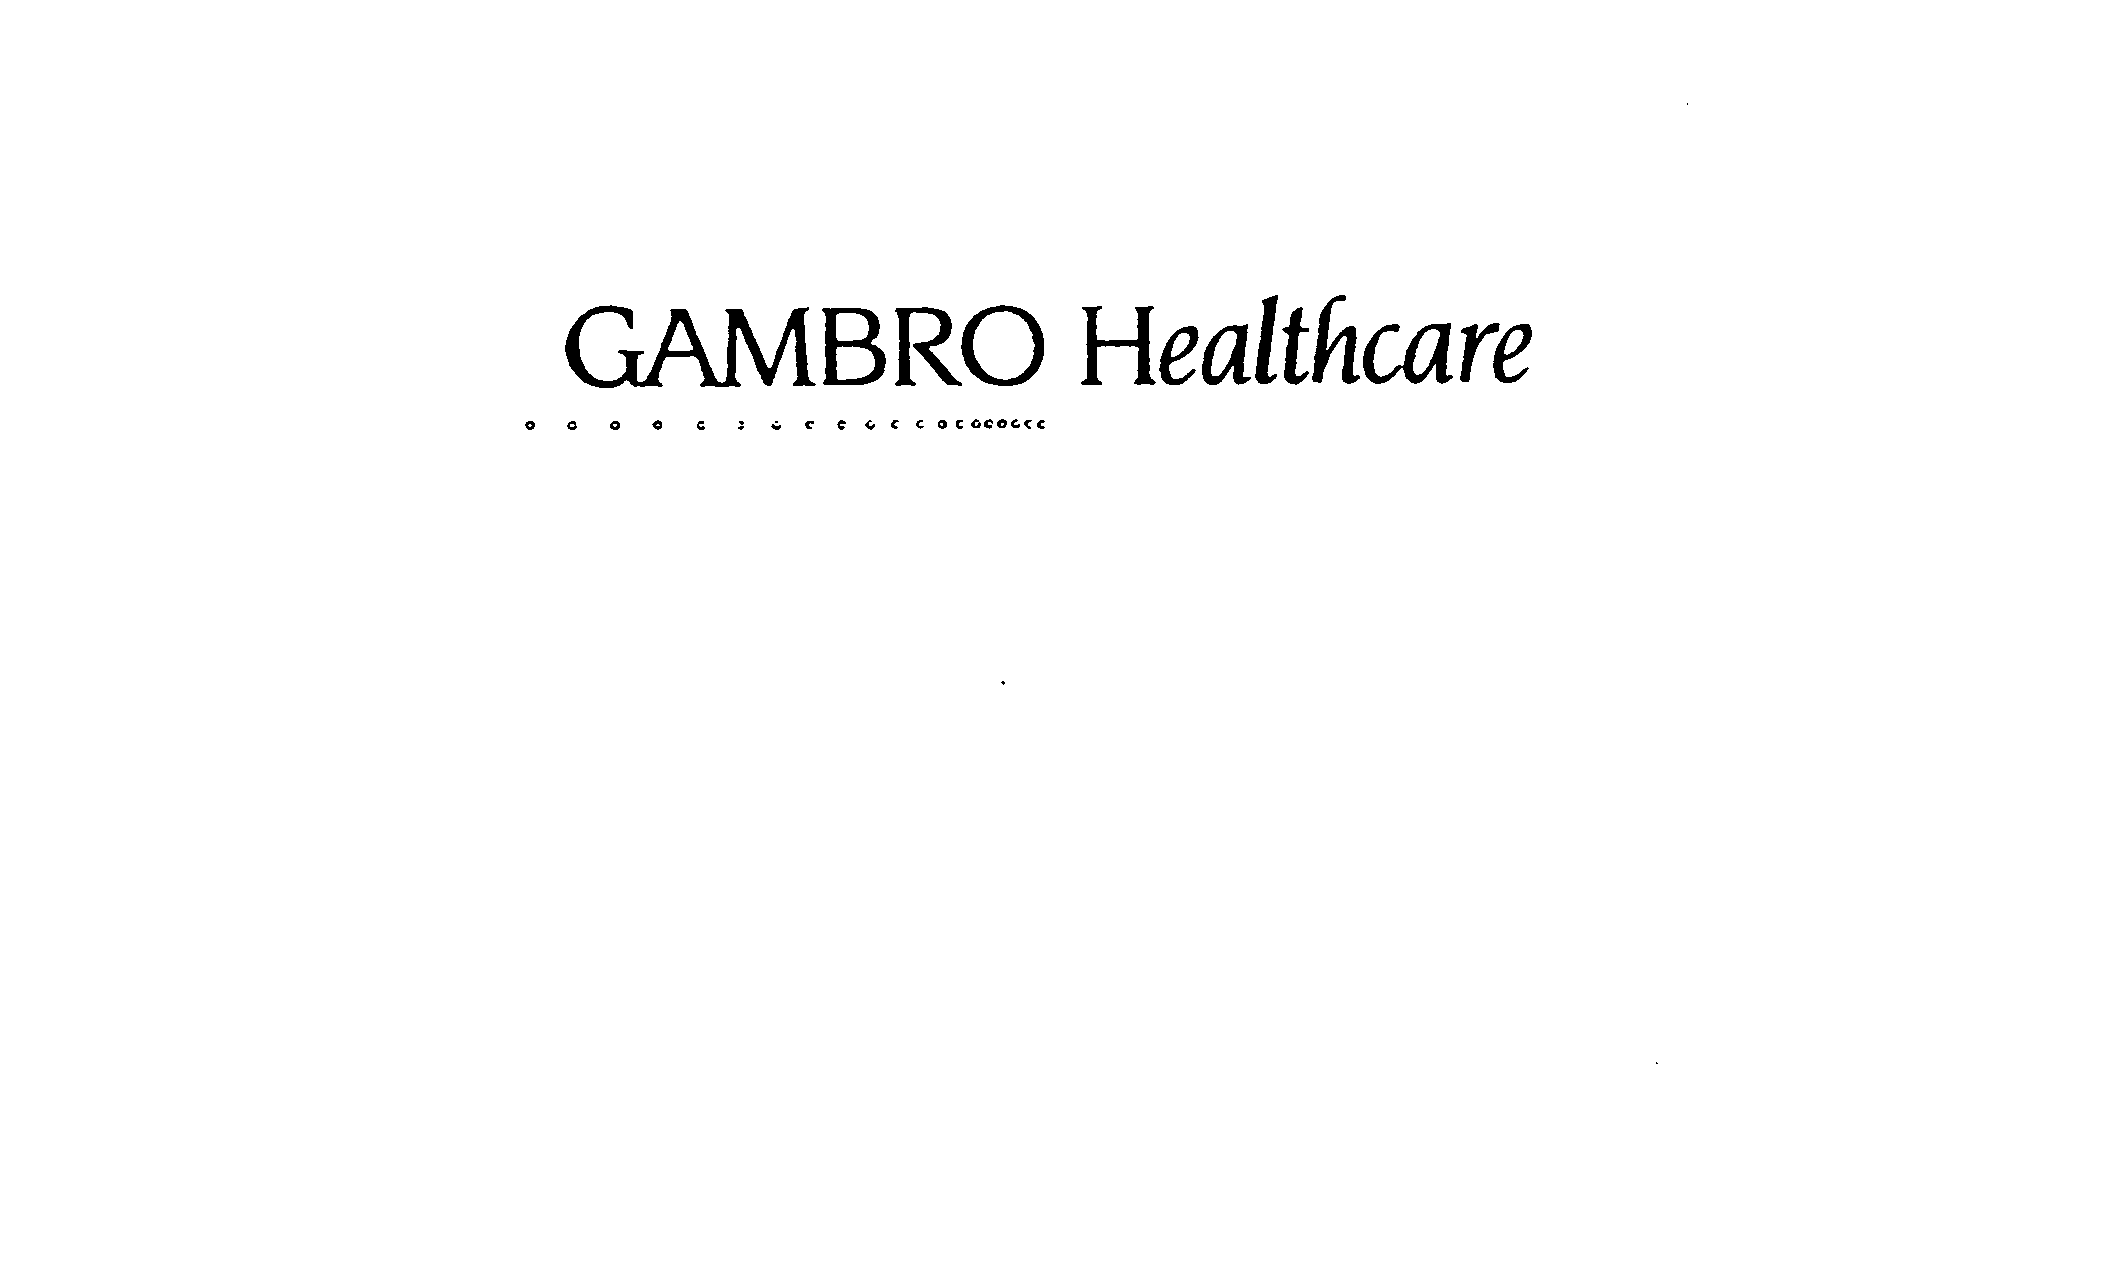  GAMBRO HEALTHCARE